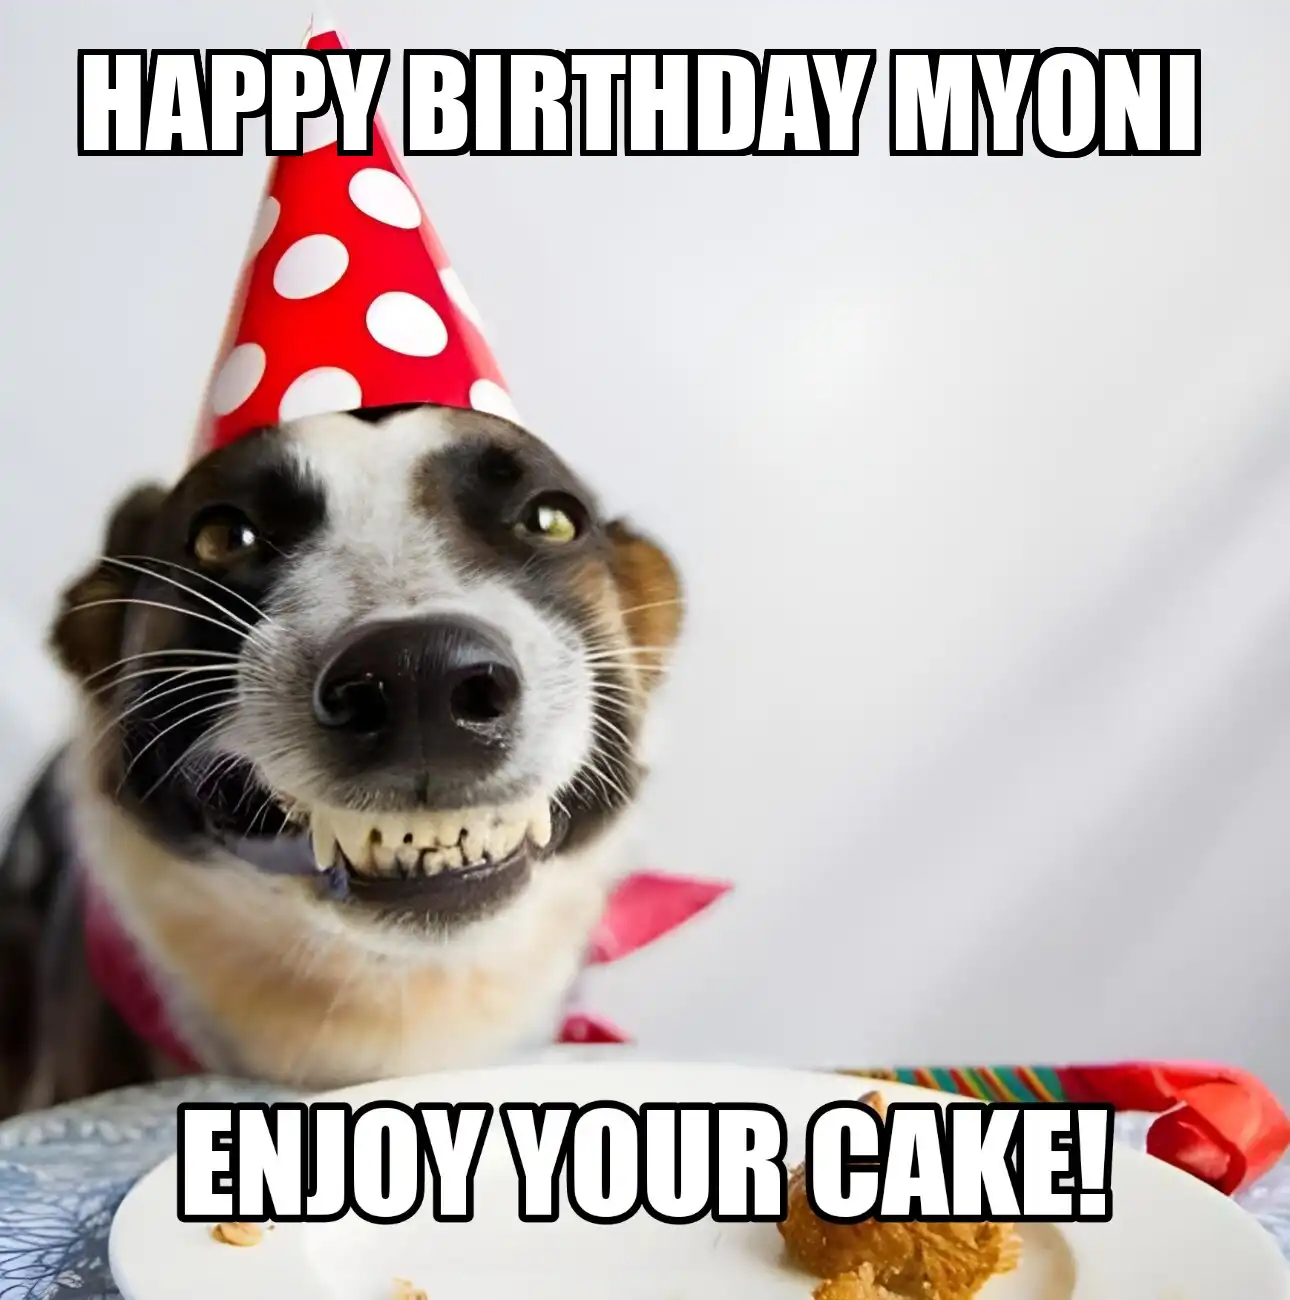 Happy Birthday Myoni Enjoy Your Cake Dog Meme